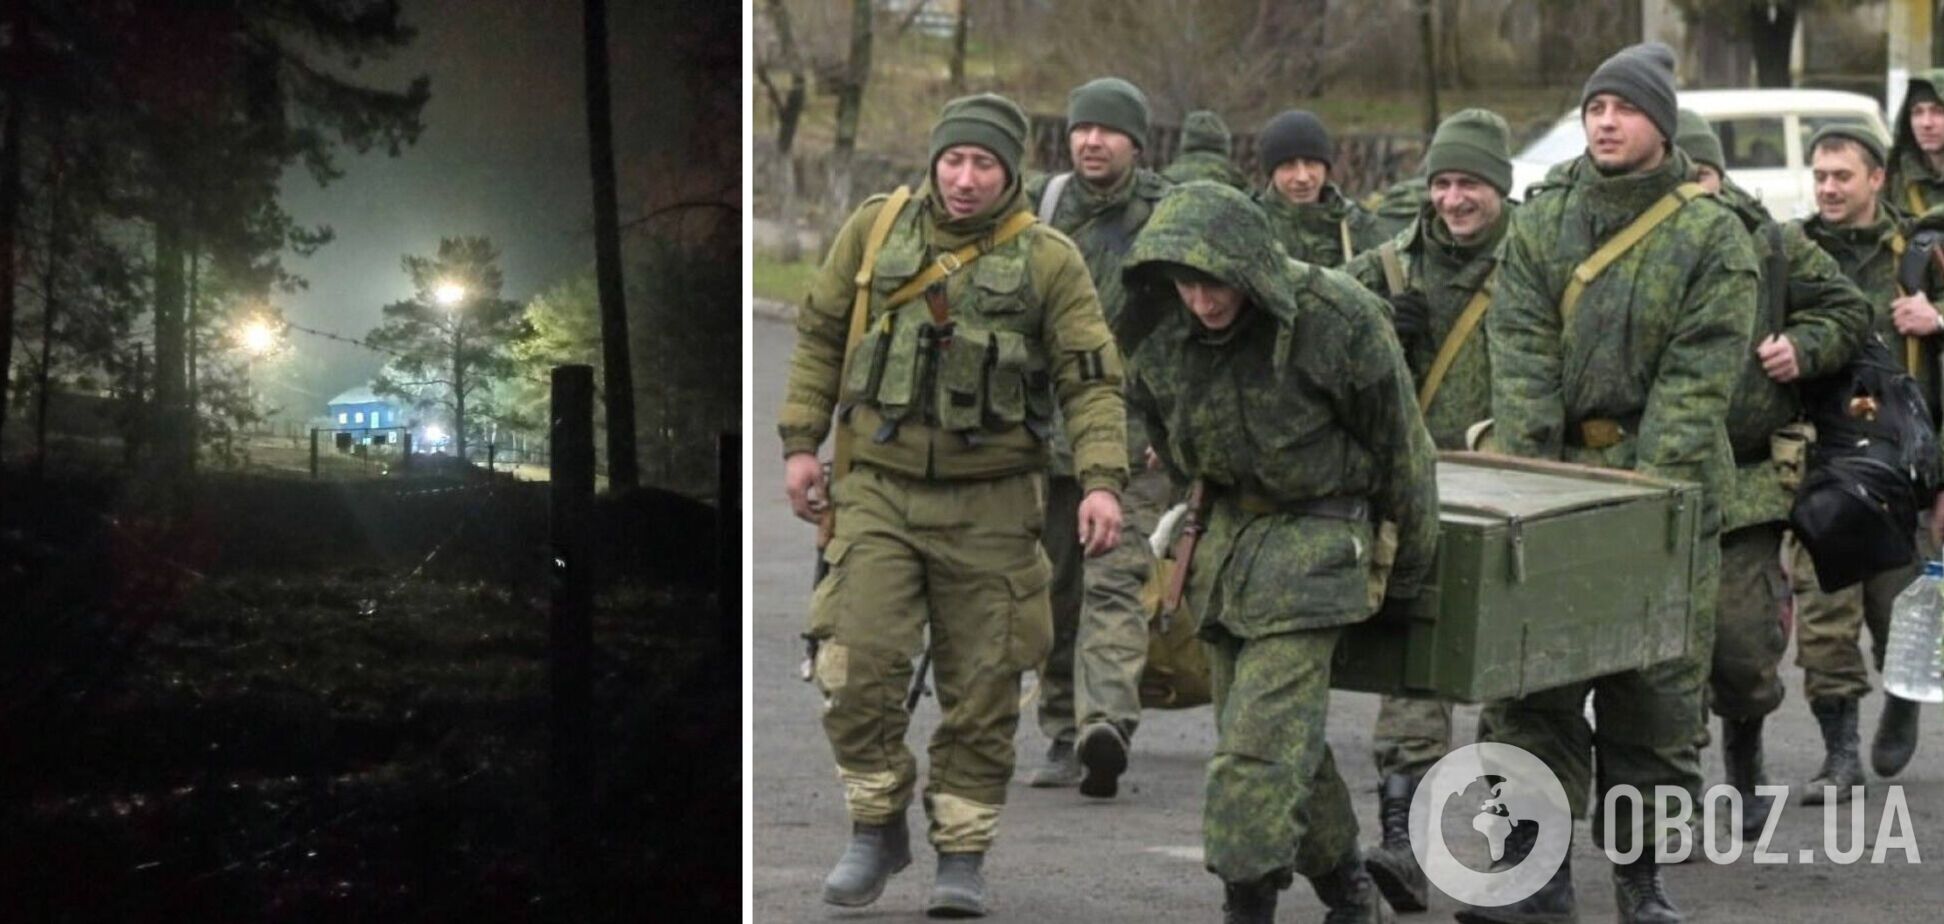 Агенти 'Атеш' провели розвідку на базі окупантів у Тольятті, де зберігаються боєприпаси. Фото 